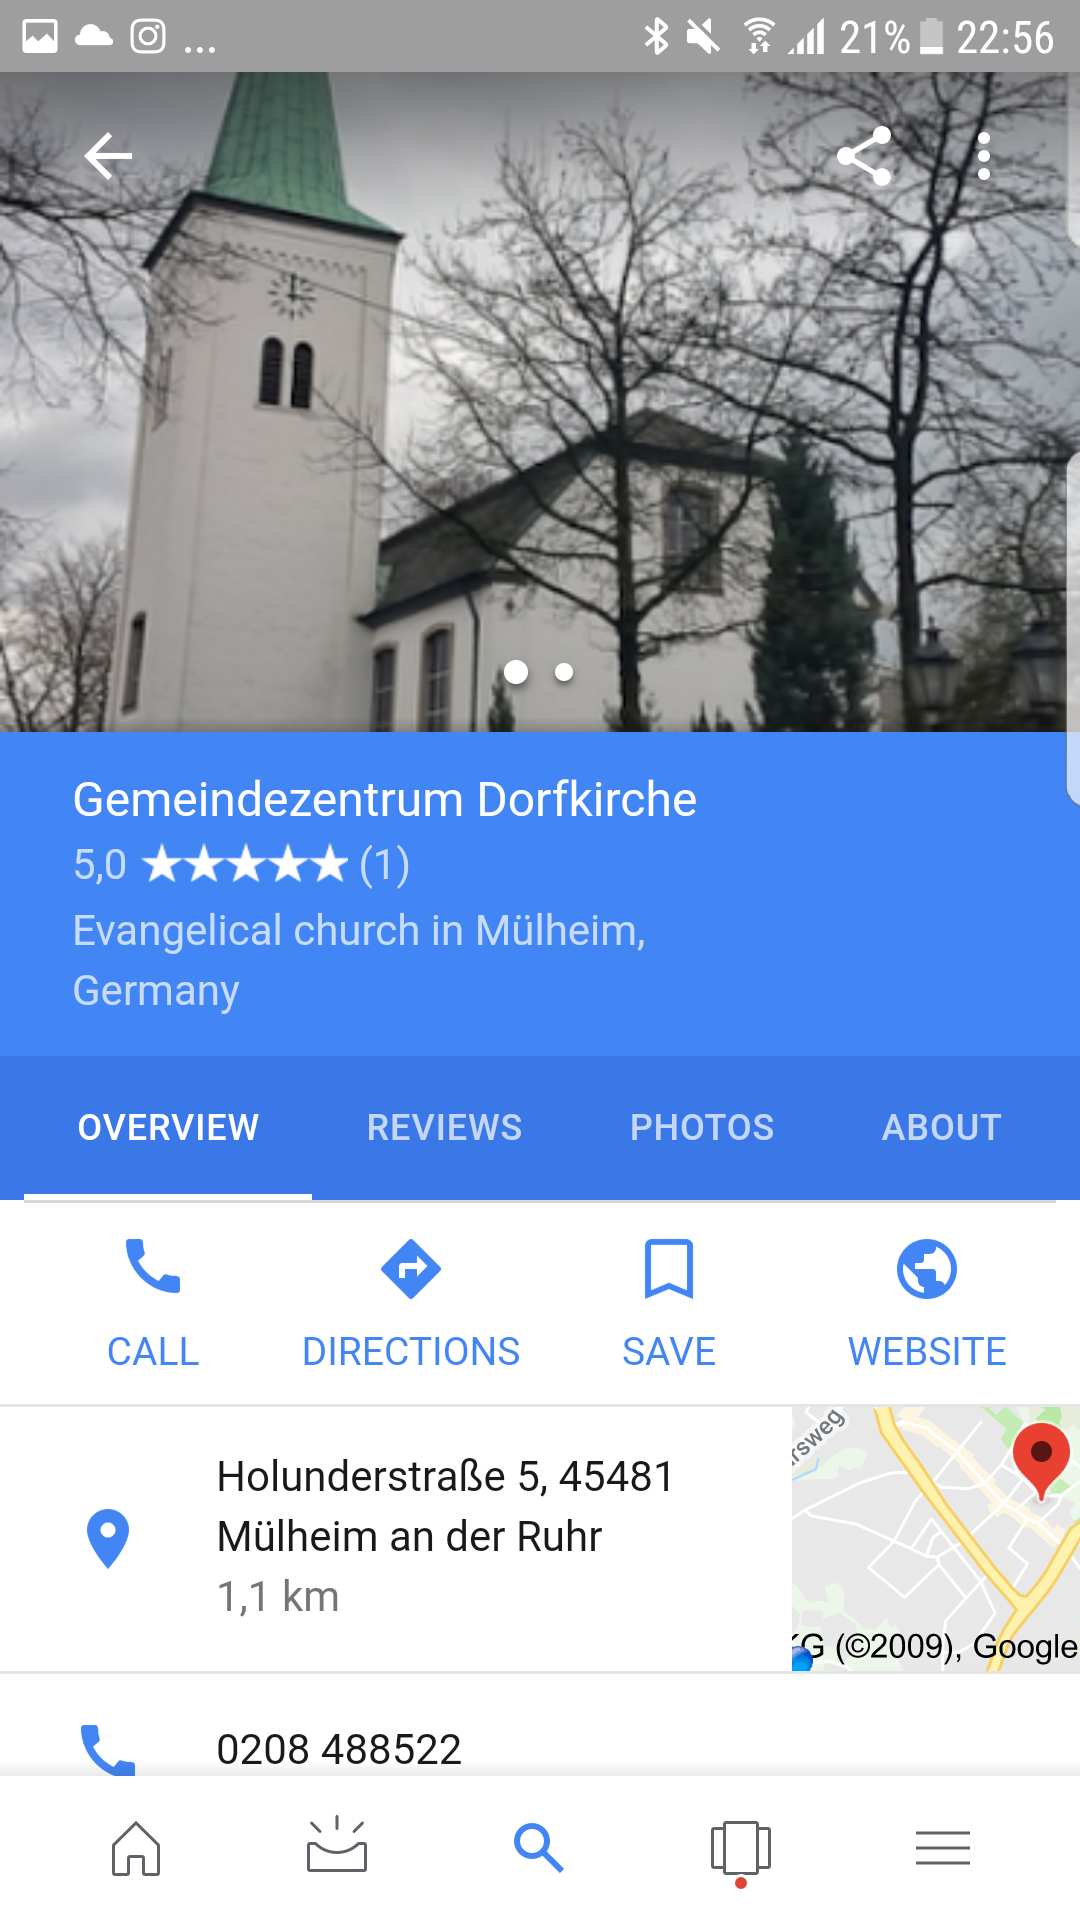 Info-Karte für die Dorfkirche Saarn nach dem Hochladen eines Fotos